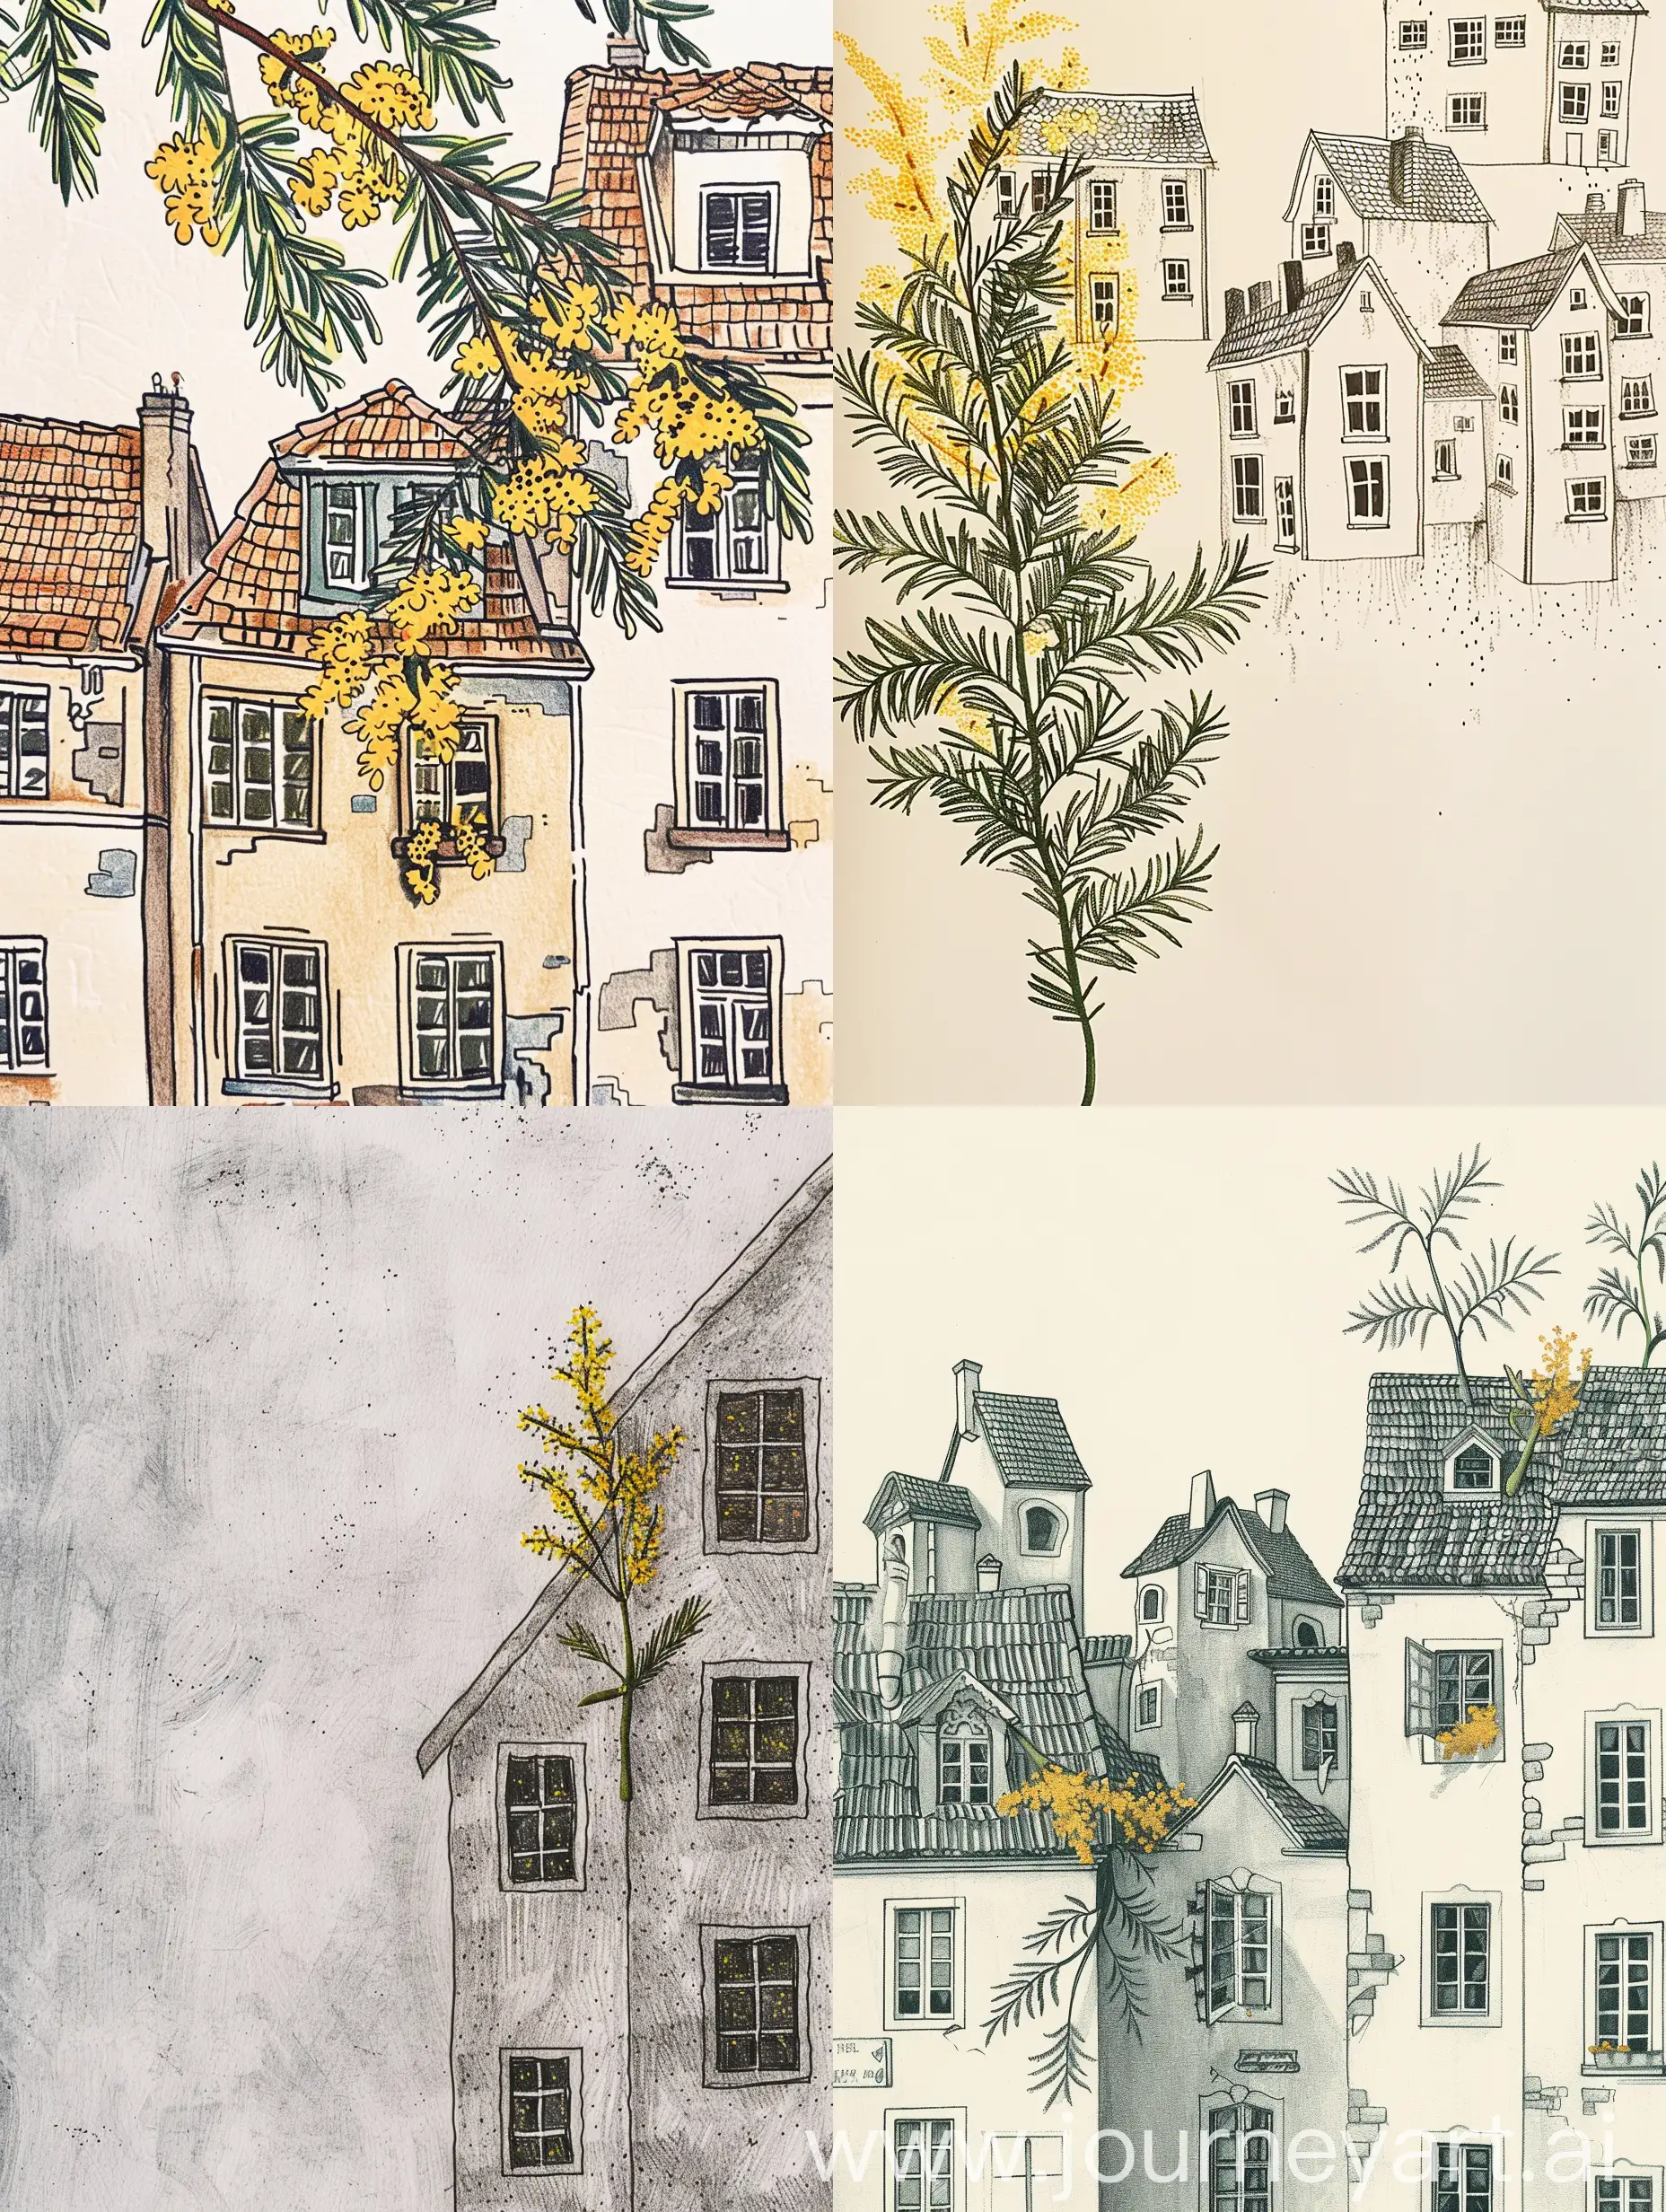 disegna delle casette in miniatura, dalle finestrelle esce un ramoscello di mimossa